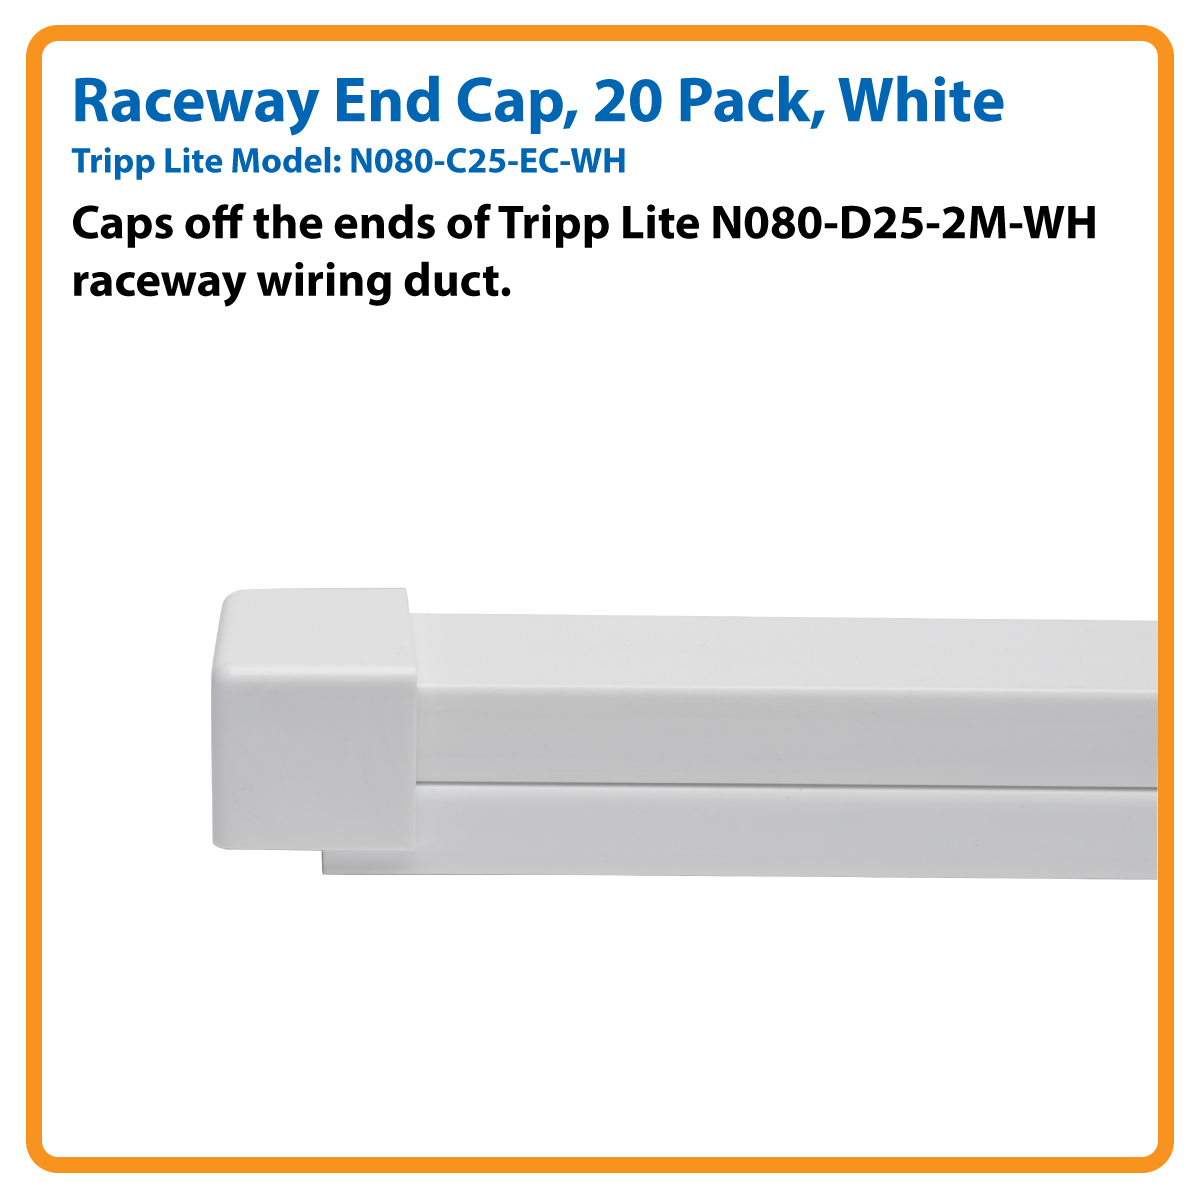 Shop | Tripp Lite Raceway End Cap for Cable Wiring Duct N080-D25-2M-WH 20  Pk White - cable raceway end cap - TAA Compliant